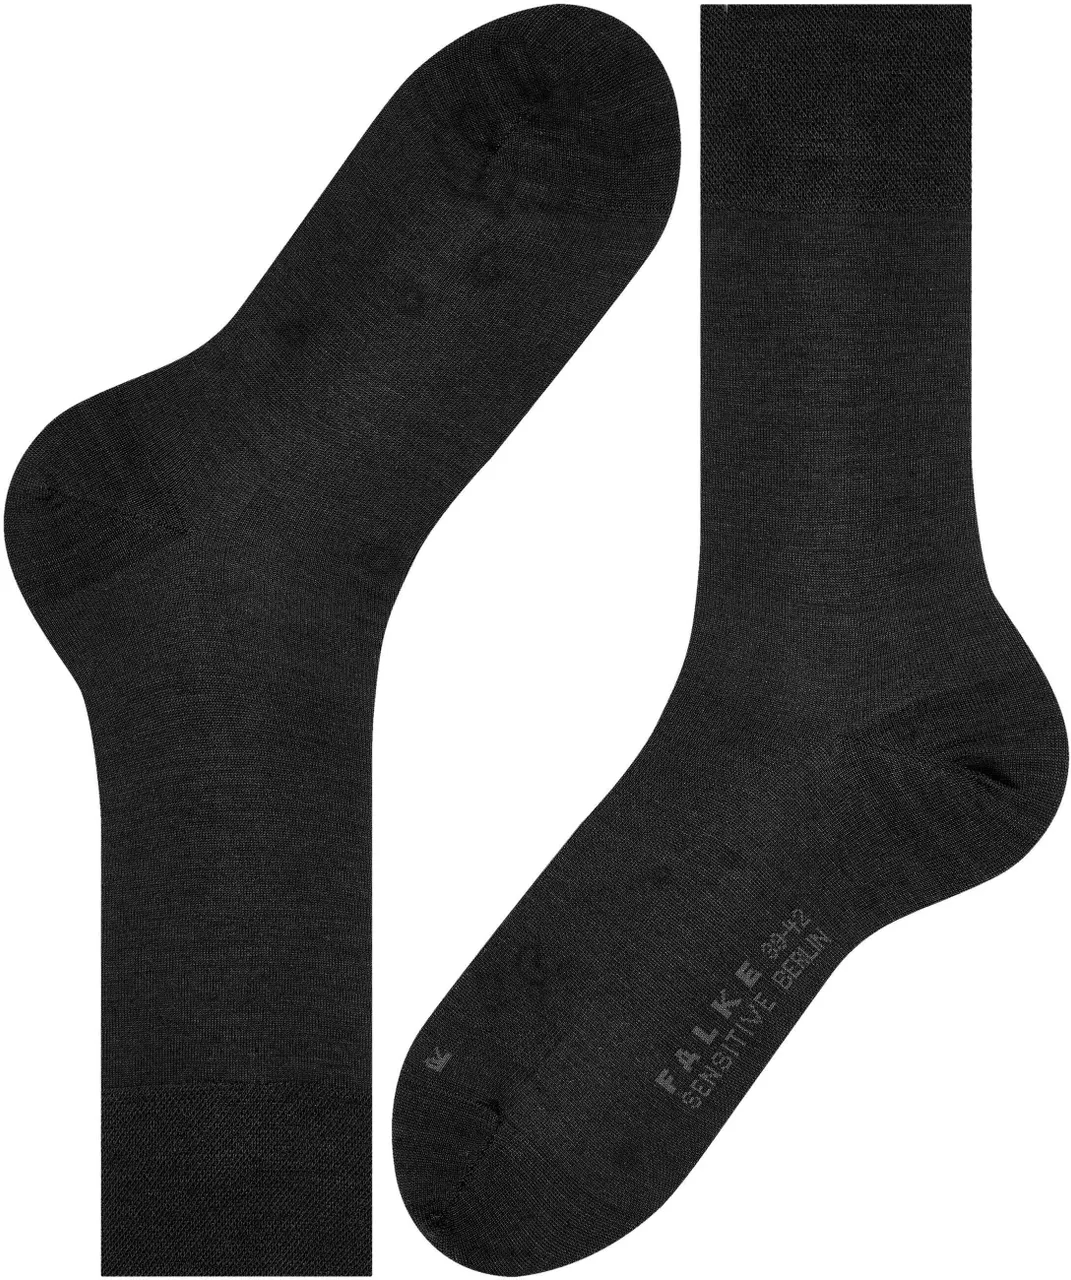 Falke Sock Sensitive Berlin Wool Blend Black